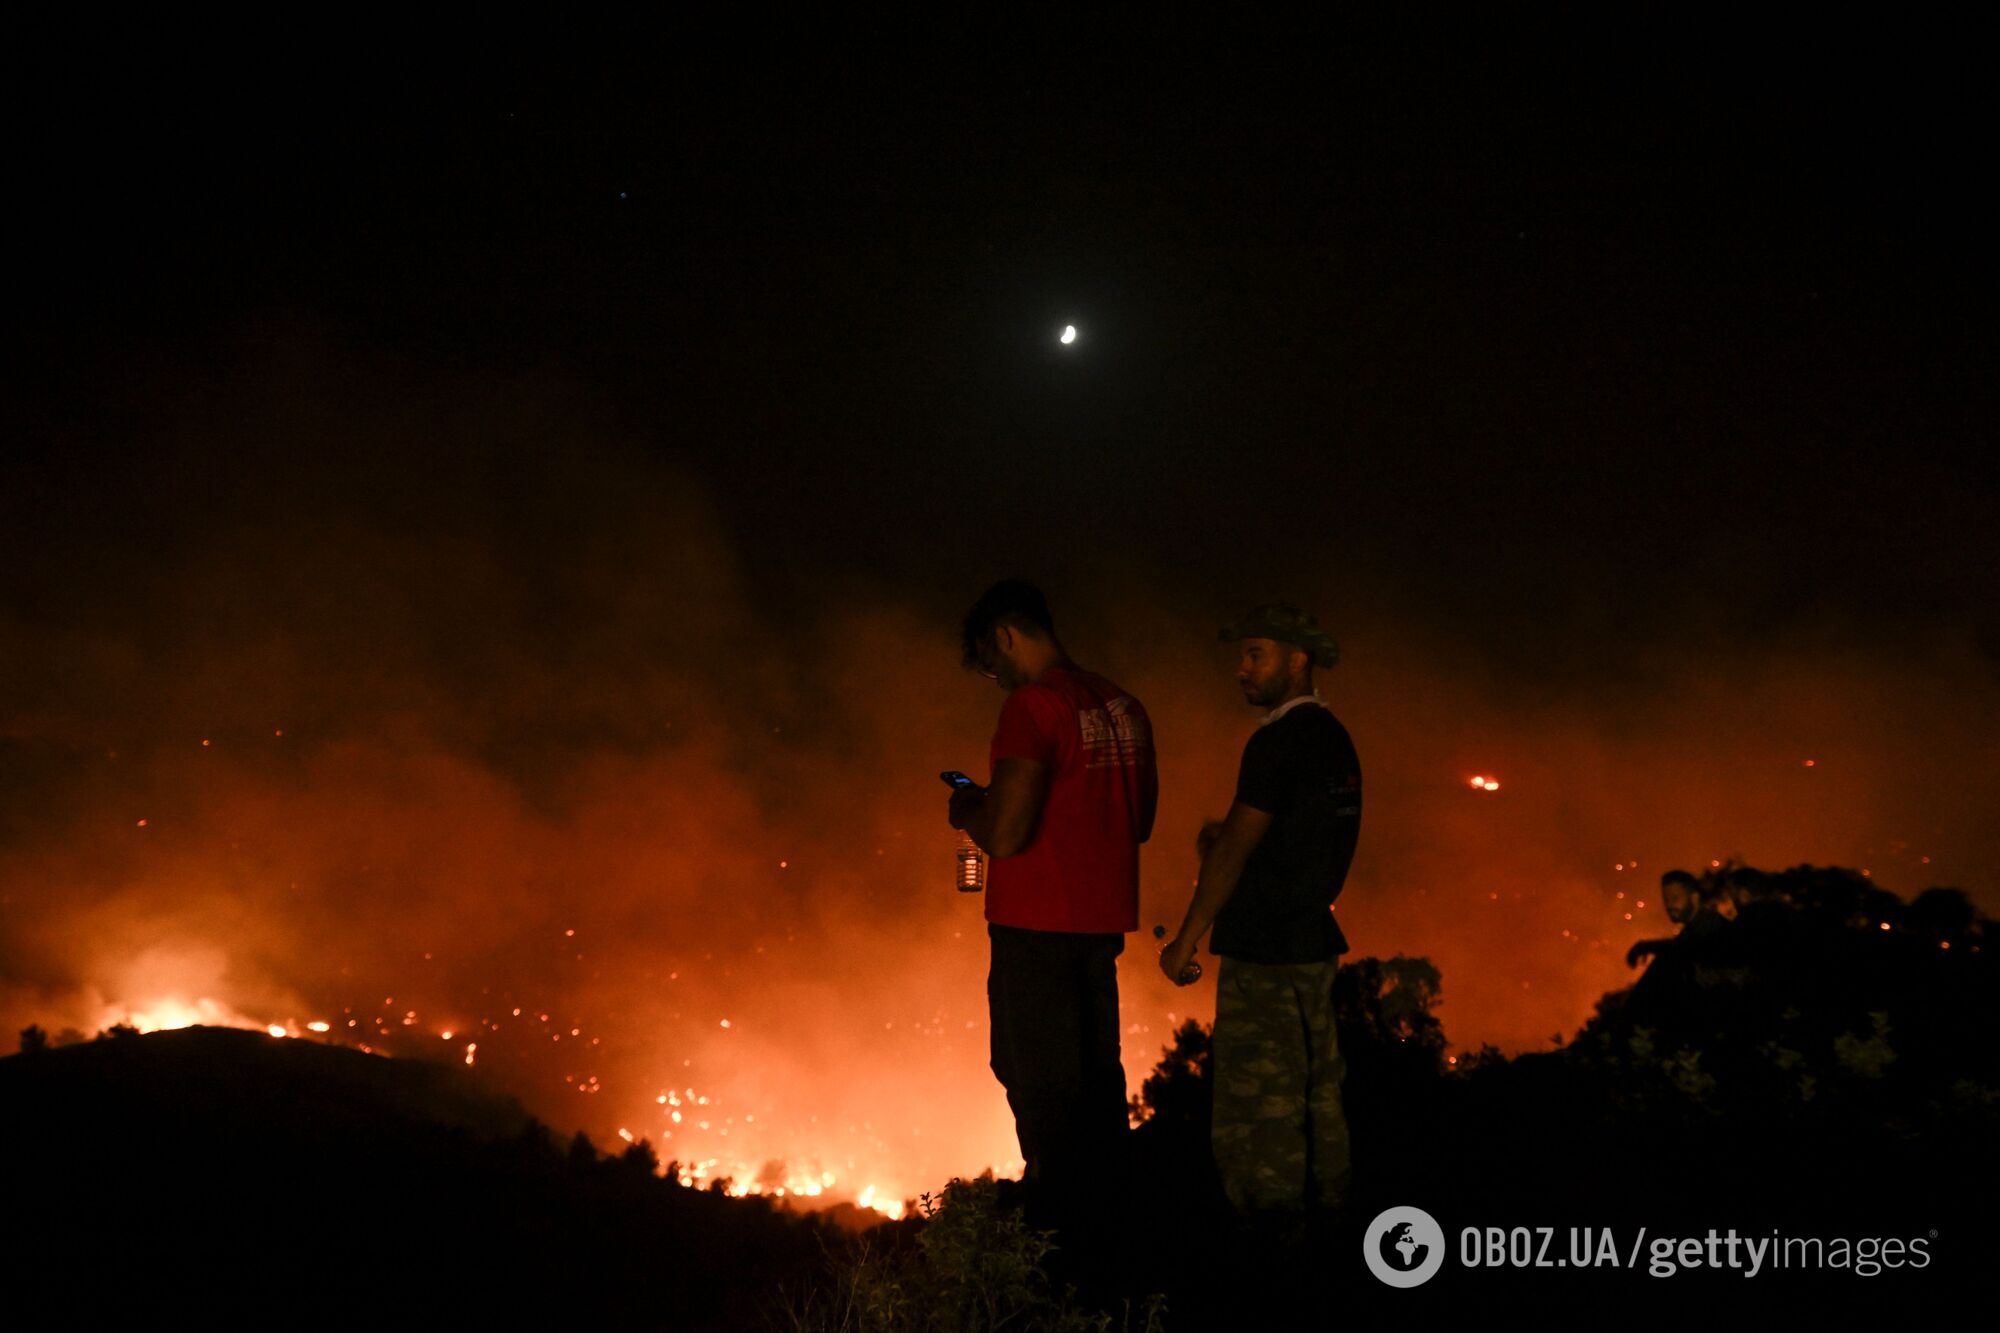 В Греции бушуют масштабные пожары: огонь виден из космоса. Фото и видео